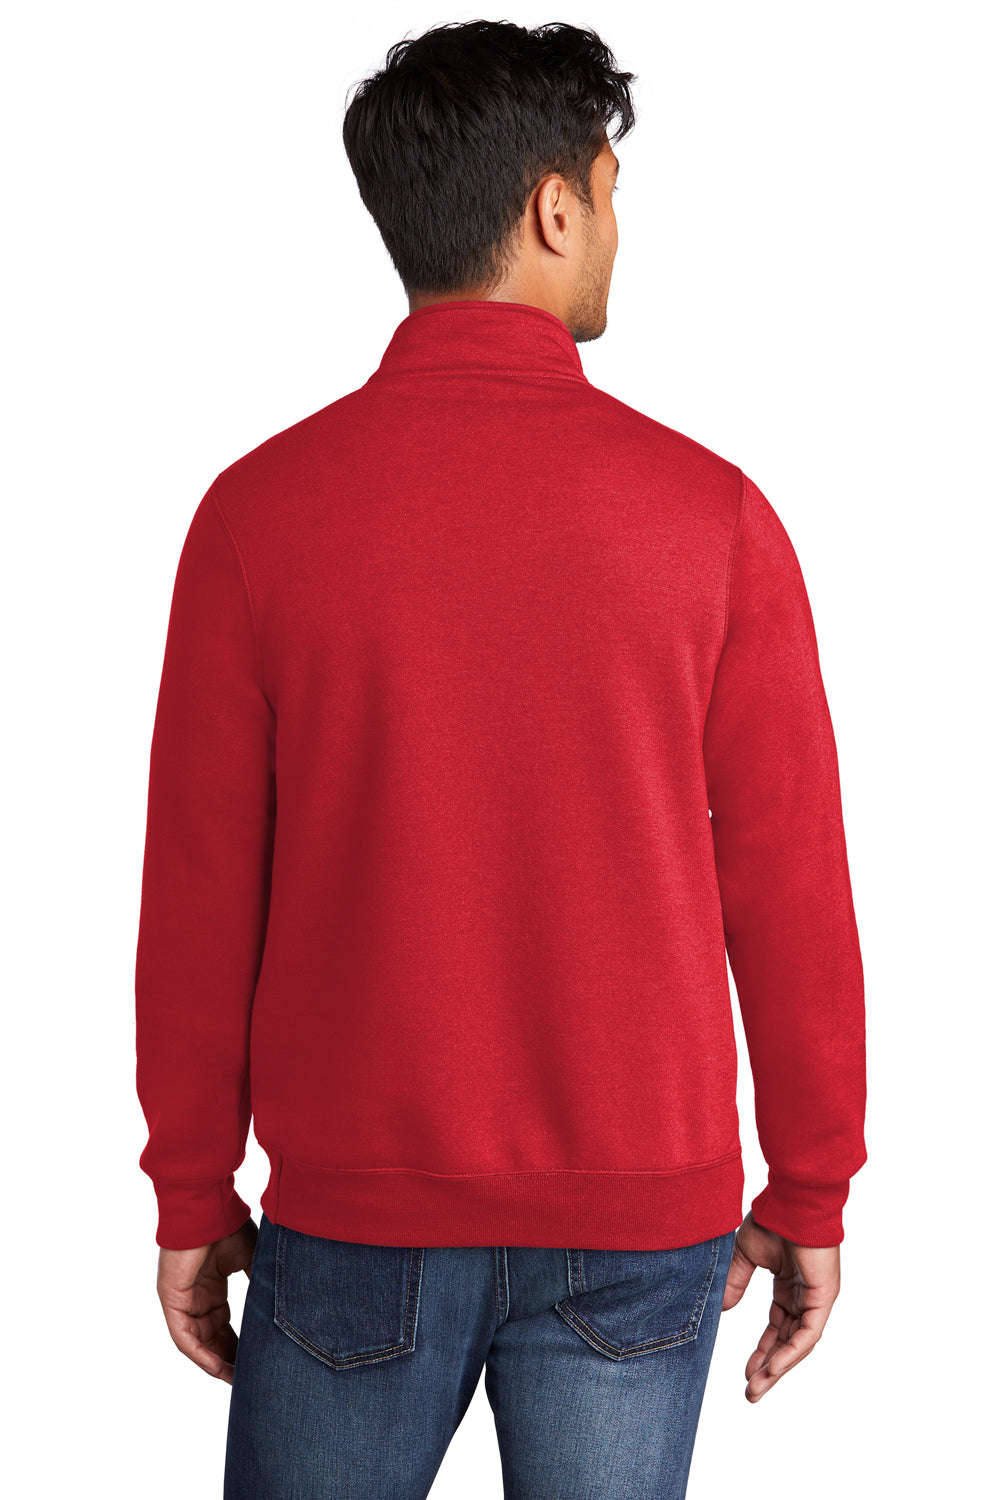 Port & Company Mens Core Fleece 1/4 Zip Sweatshirt Red Side